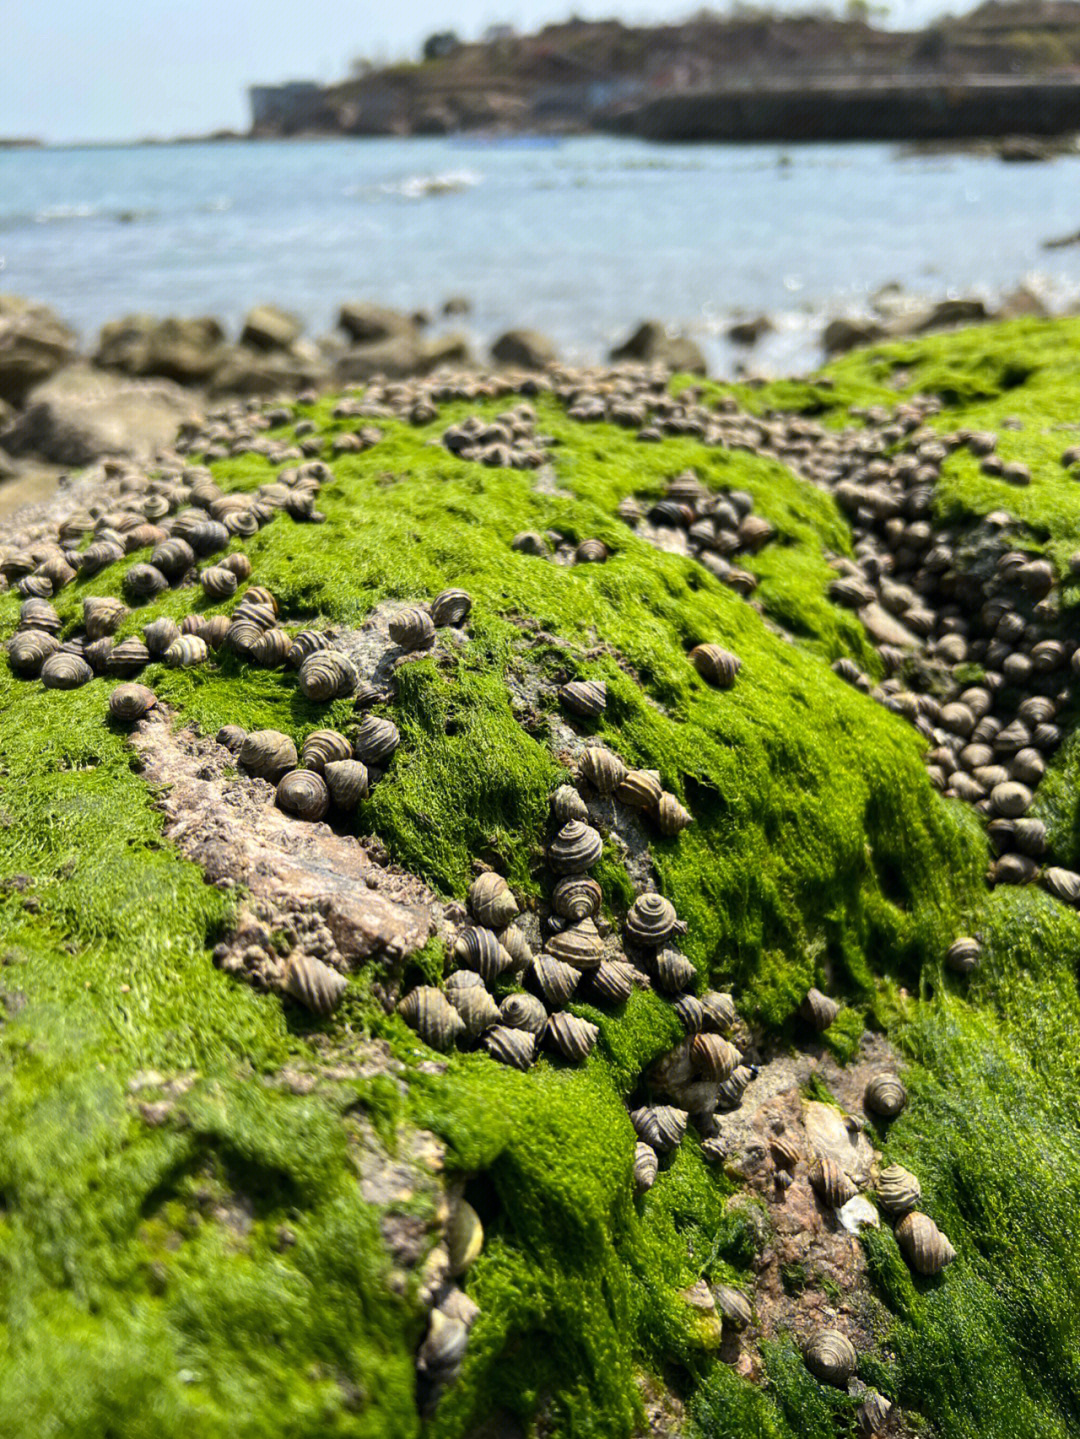 青岛崂山赶海的盛况09爬满礁石的小青螺90